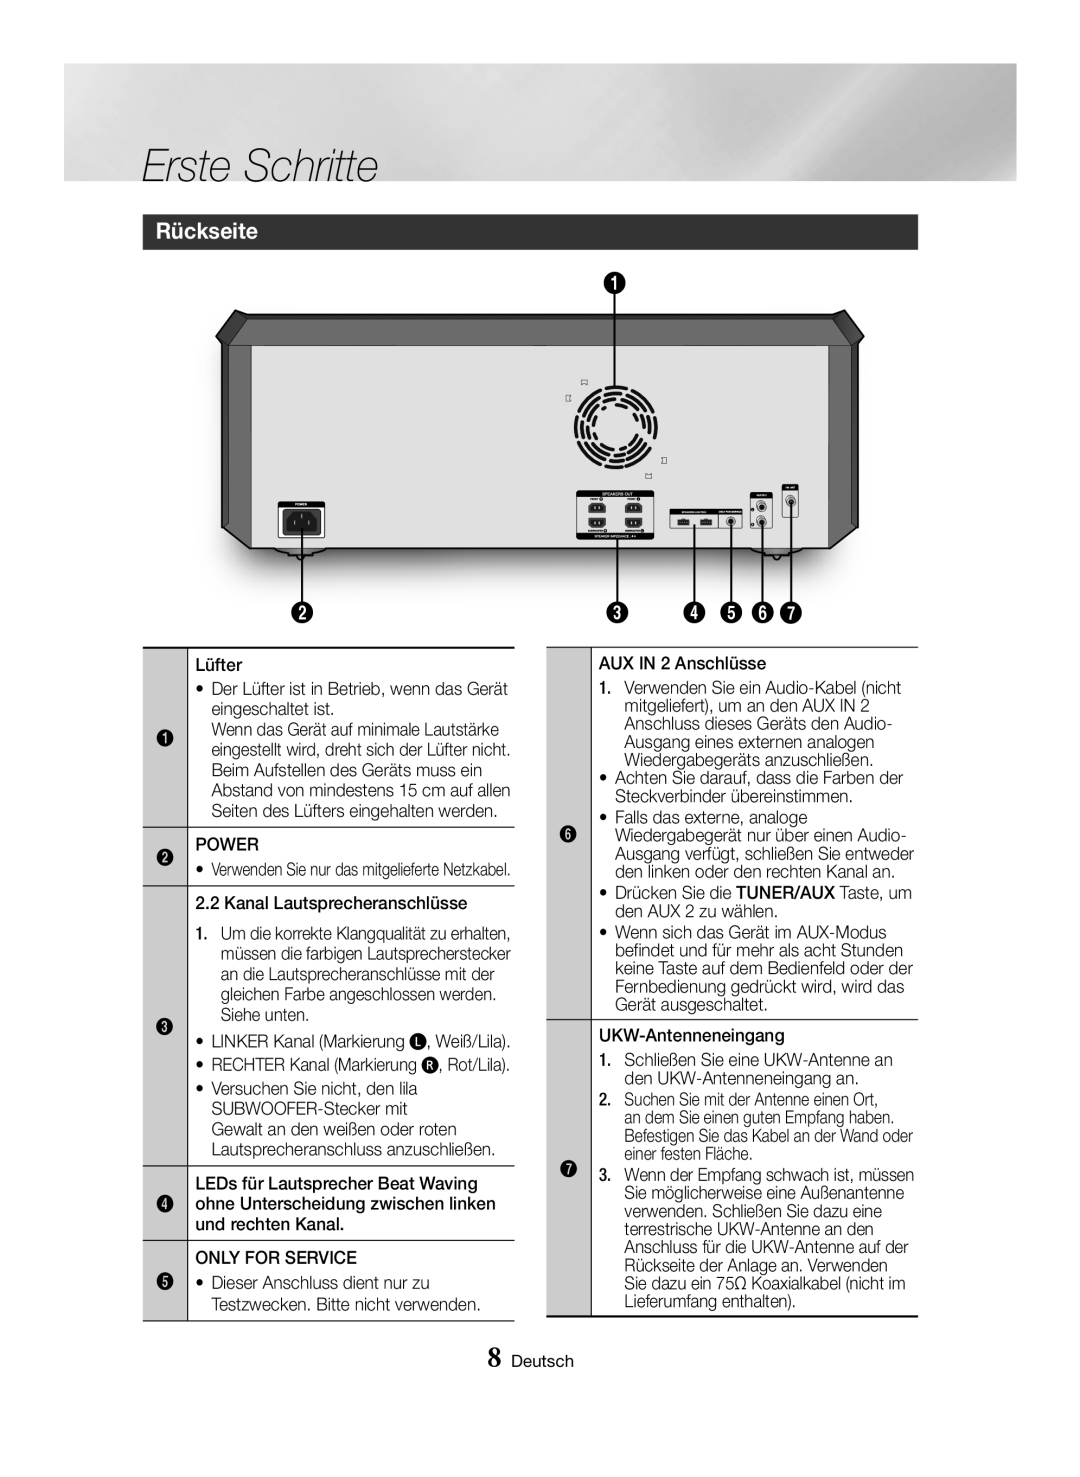 Samsung MX-HS8000/EN, MX-HS8000/ZF manual Rückseite, Erste Schritte, Testzwecken. Bitte nicht verwenden, Deutsch 